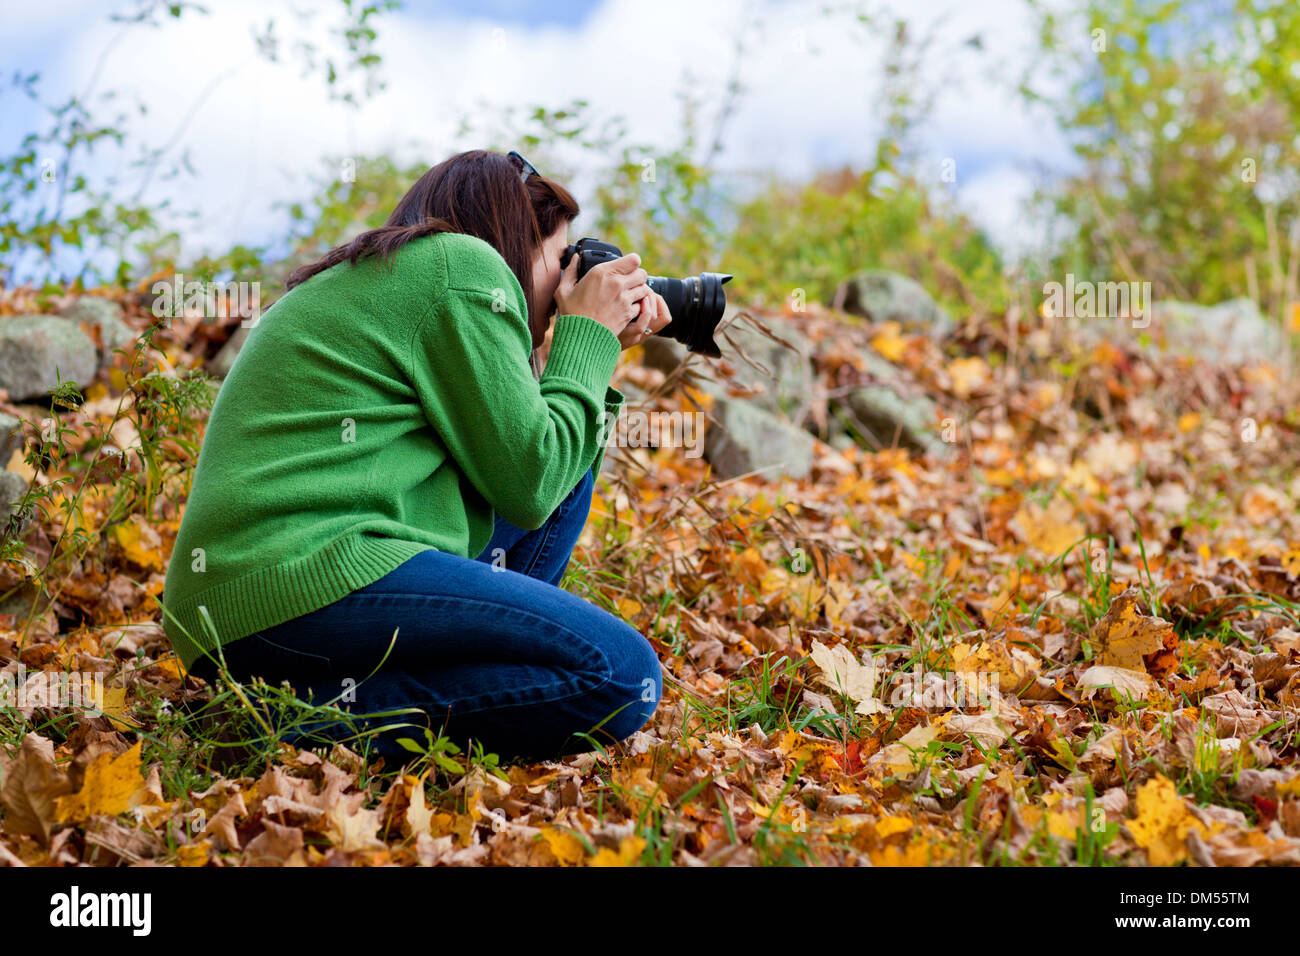 Fotografin hocken im Herbstlaub zu fotografieren Stockfoto